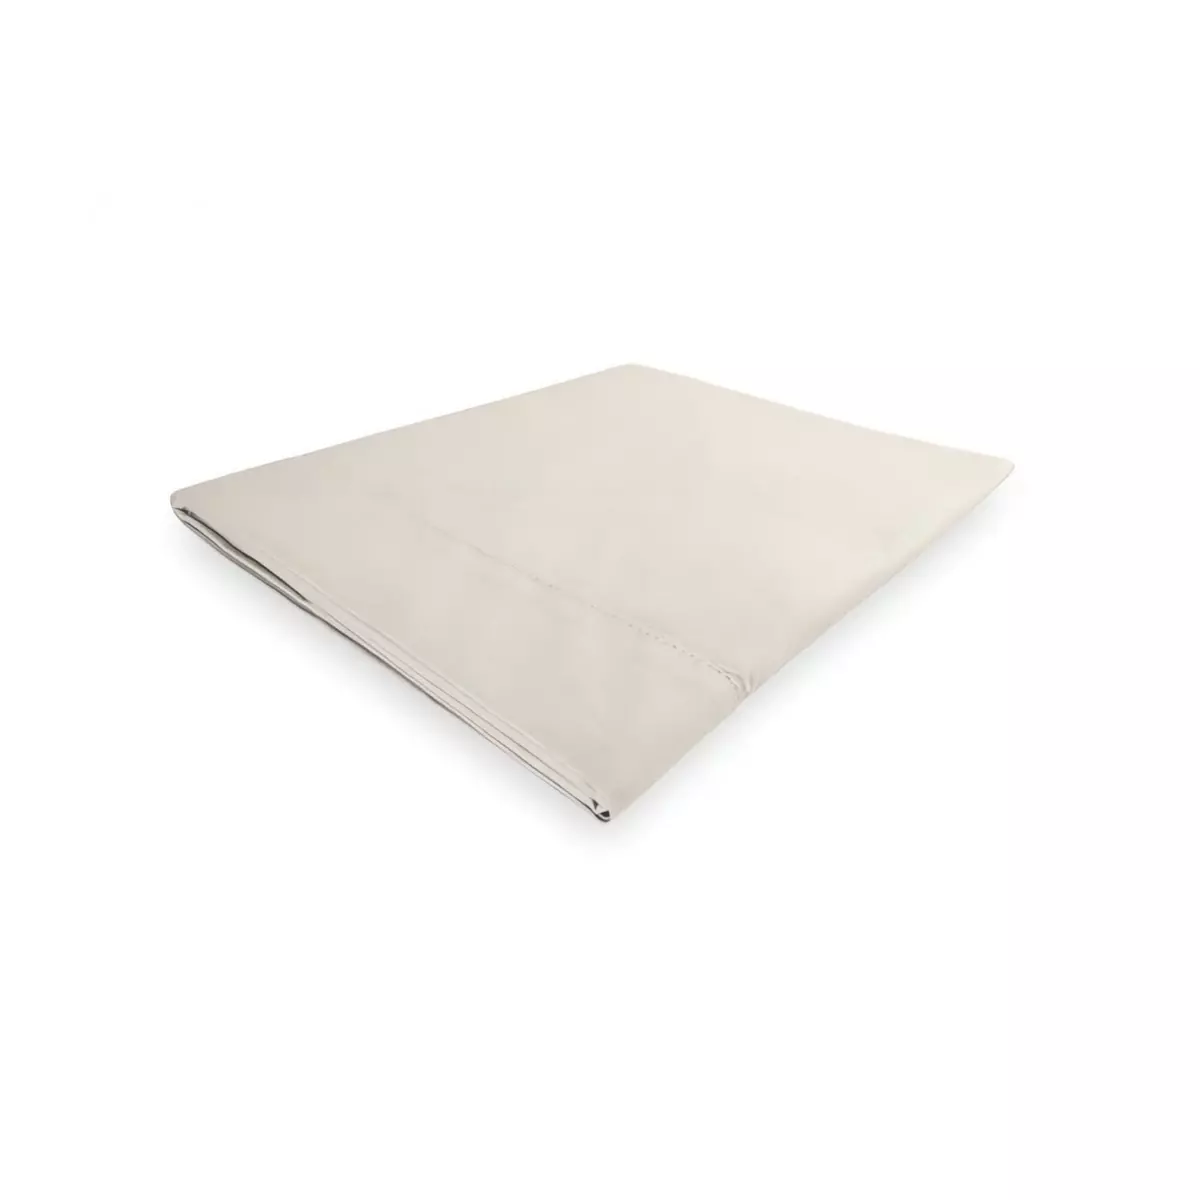 SOLEIL D'OCRE Drap plat en coton 240x300 cm PERCALE ecru, par Soleil d'ocre